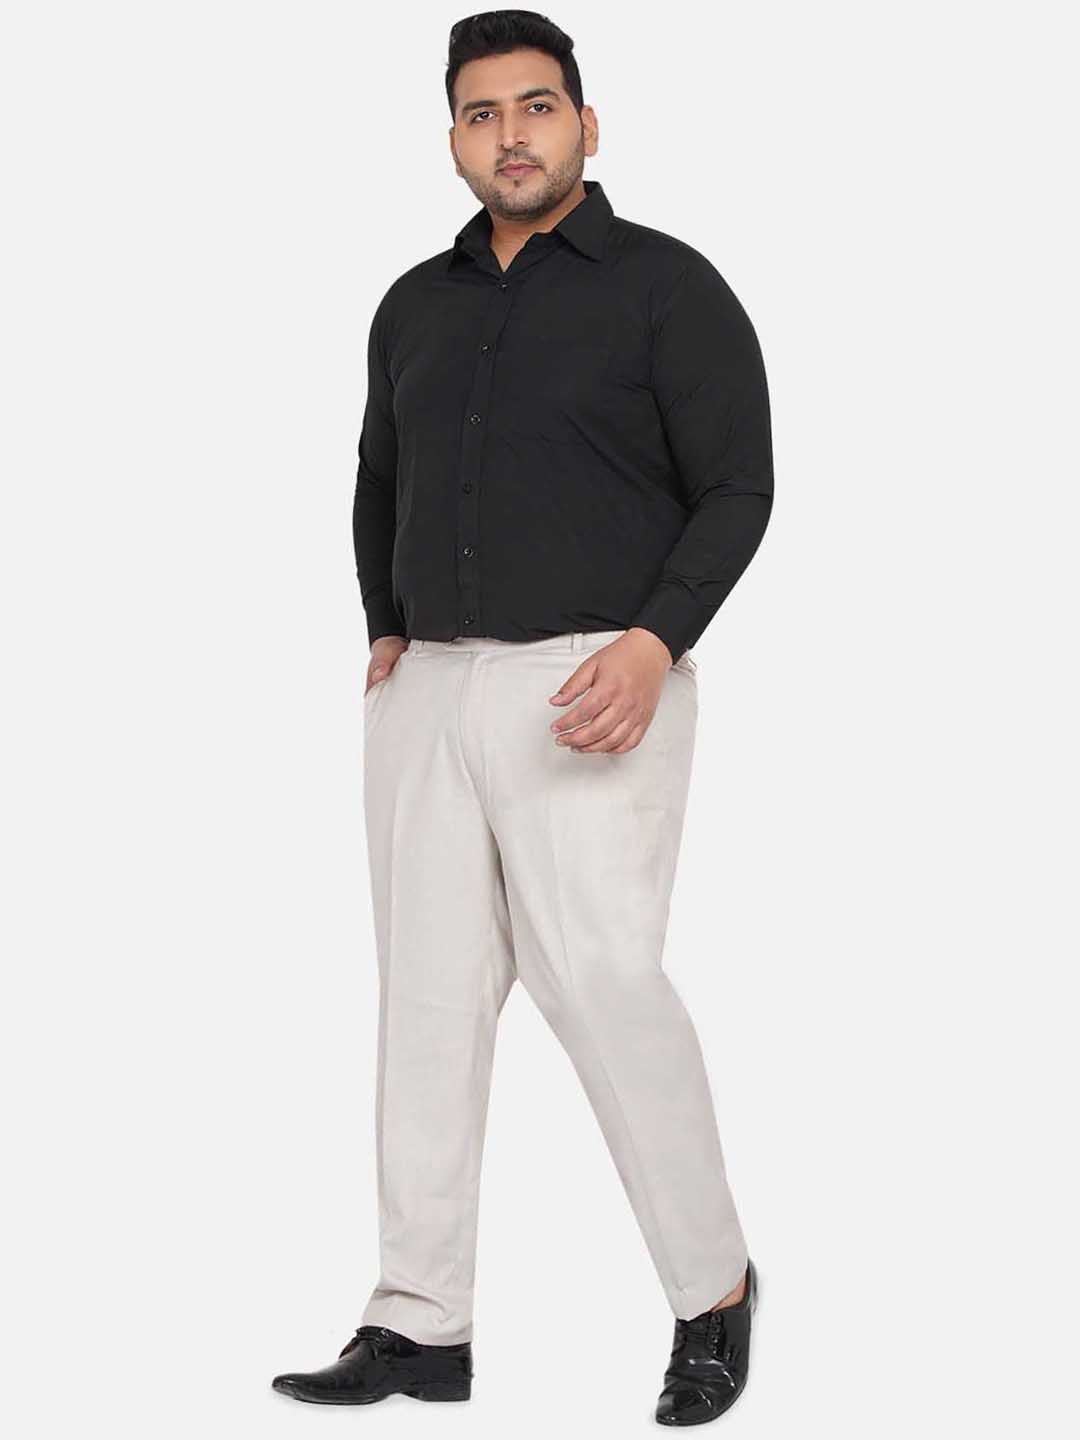 bottomwear/trousers/JPTR22010B/jptr22010b-6.jpg